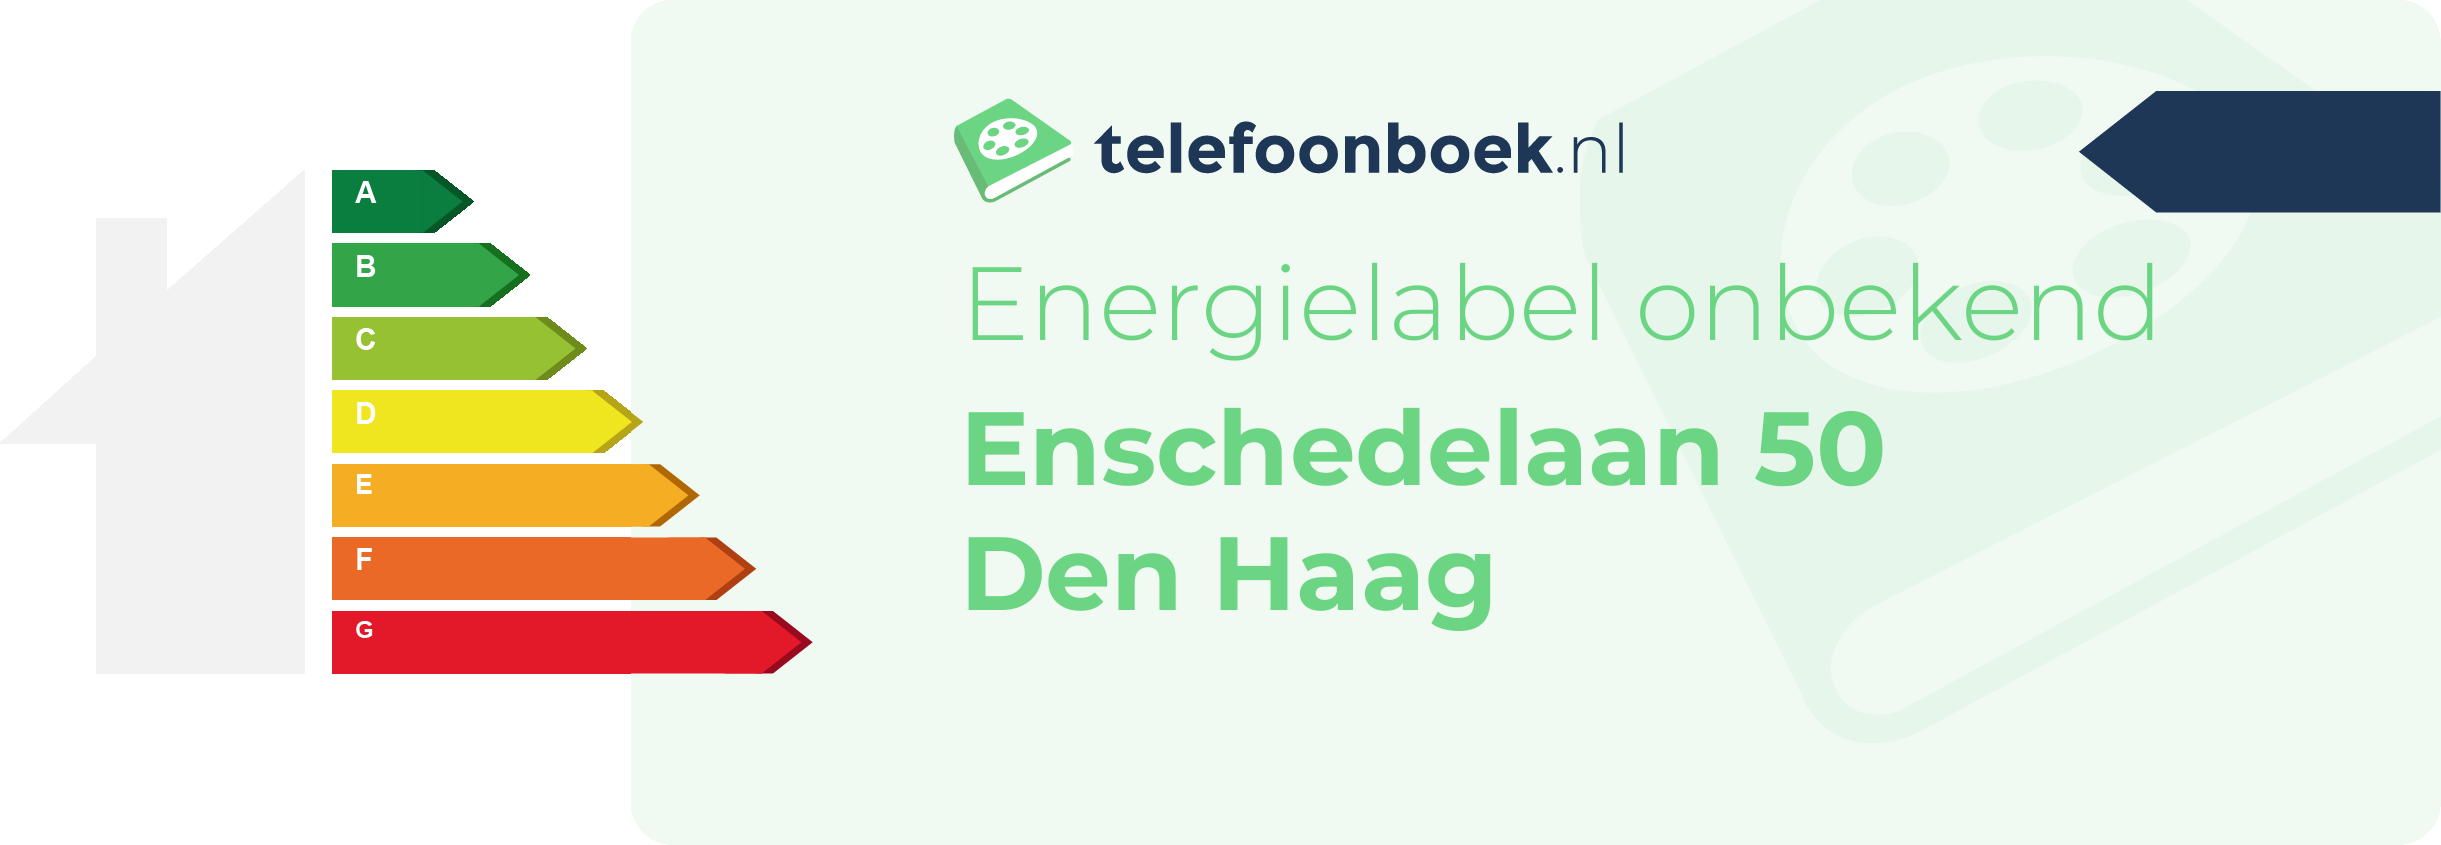 Energielabel Enschedelaan 50 Den Haag